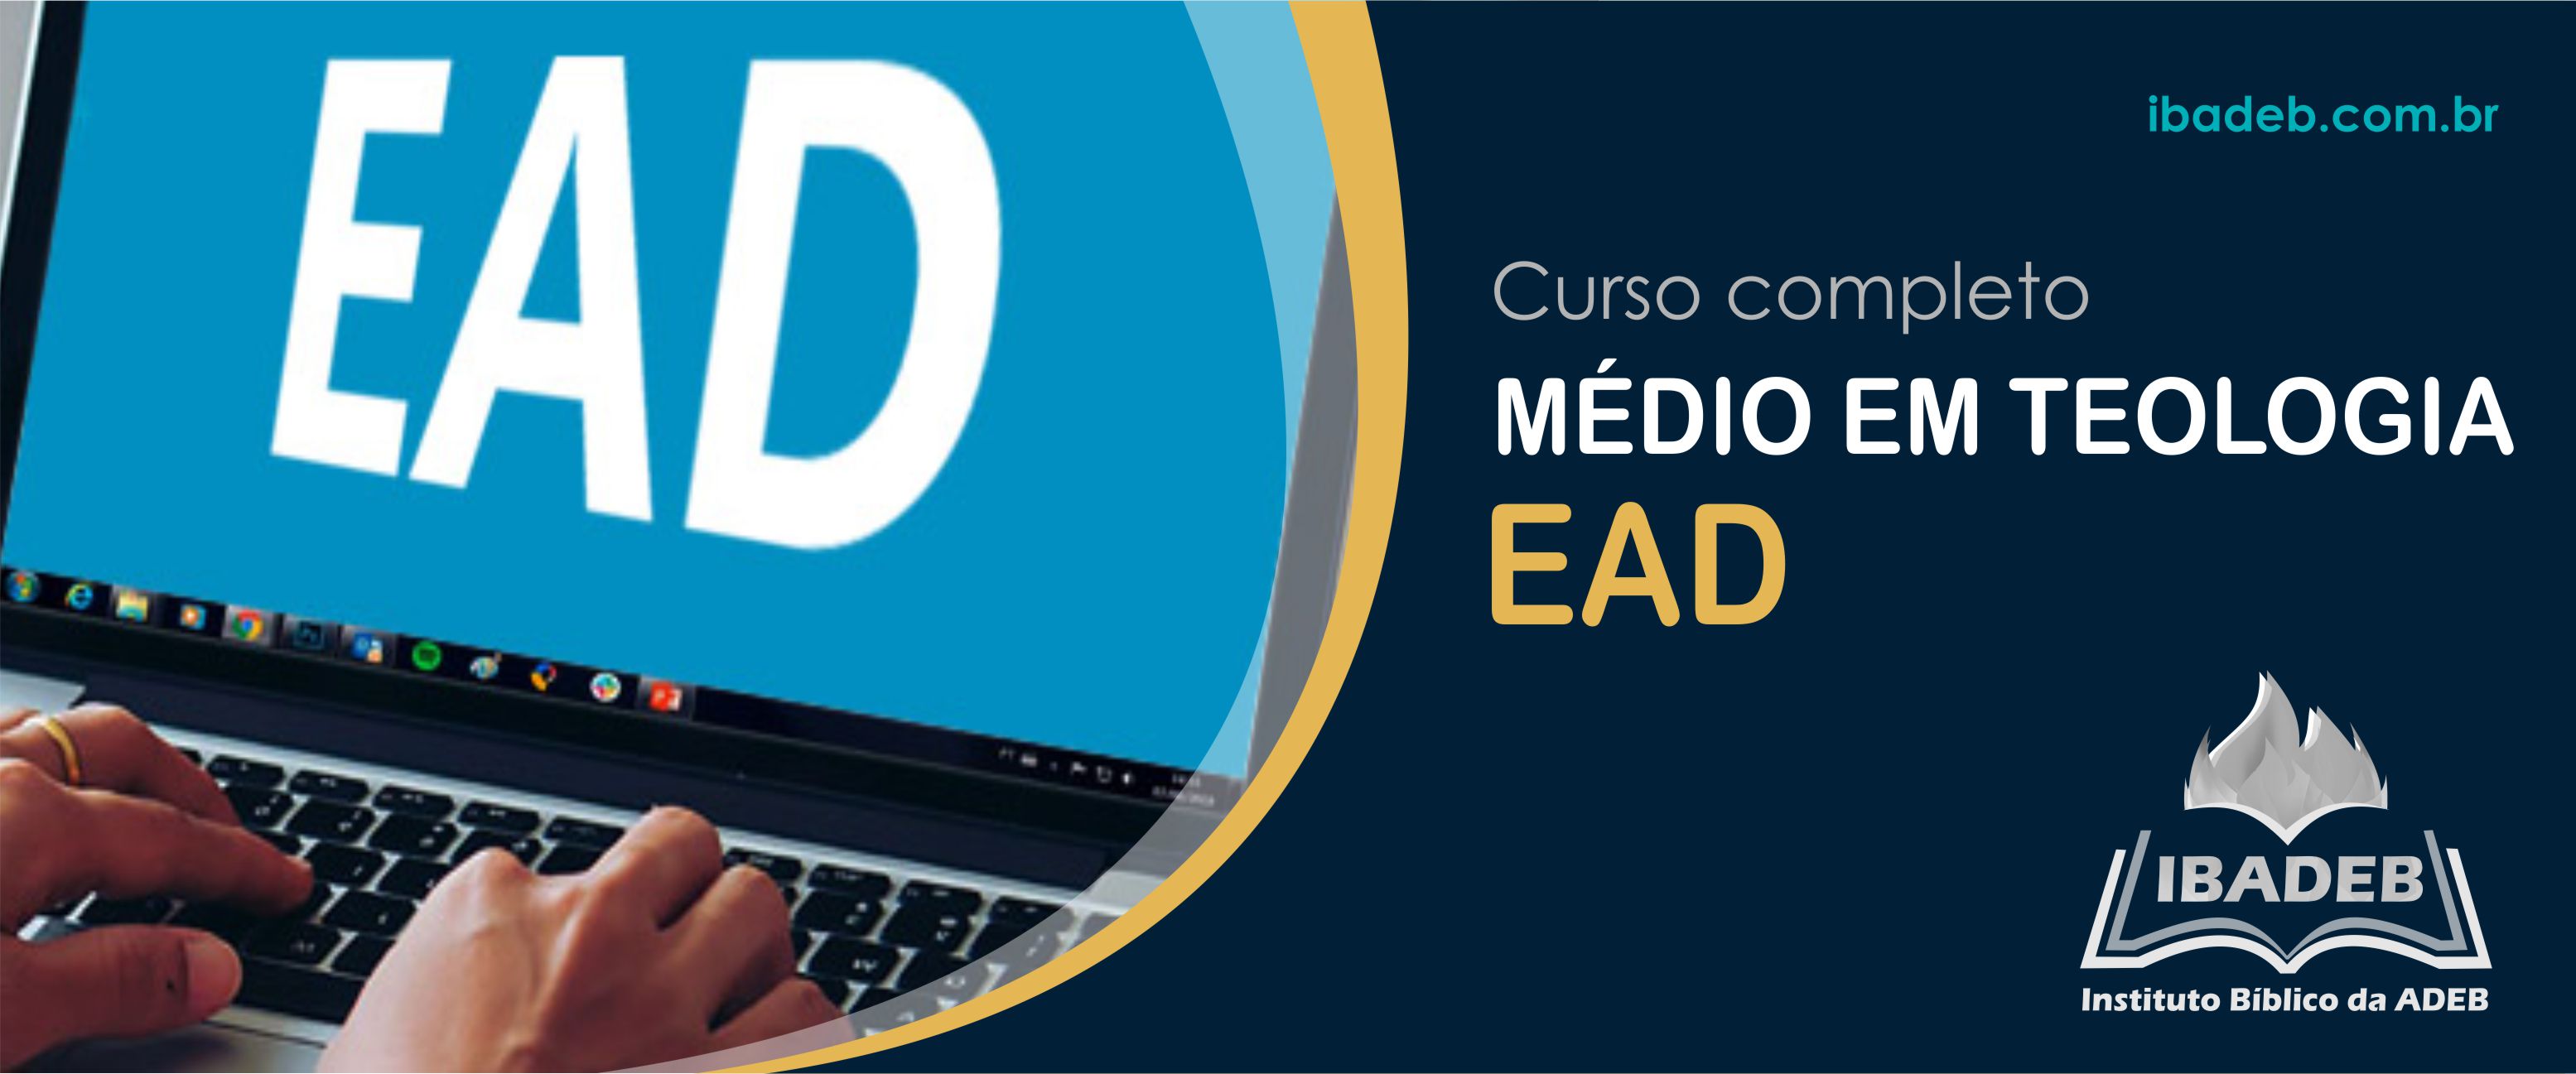 images/cursos/MEDIO_EAD.jpg